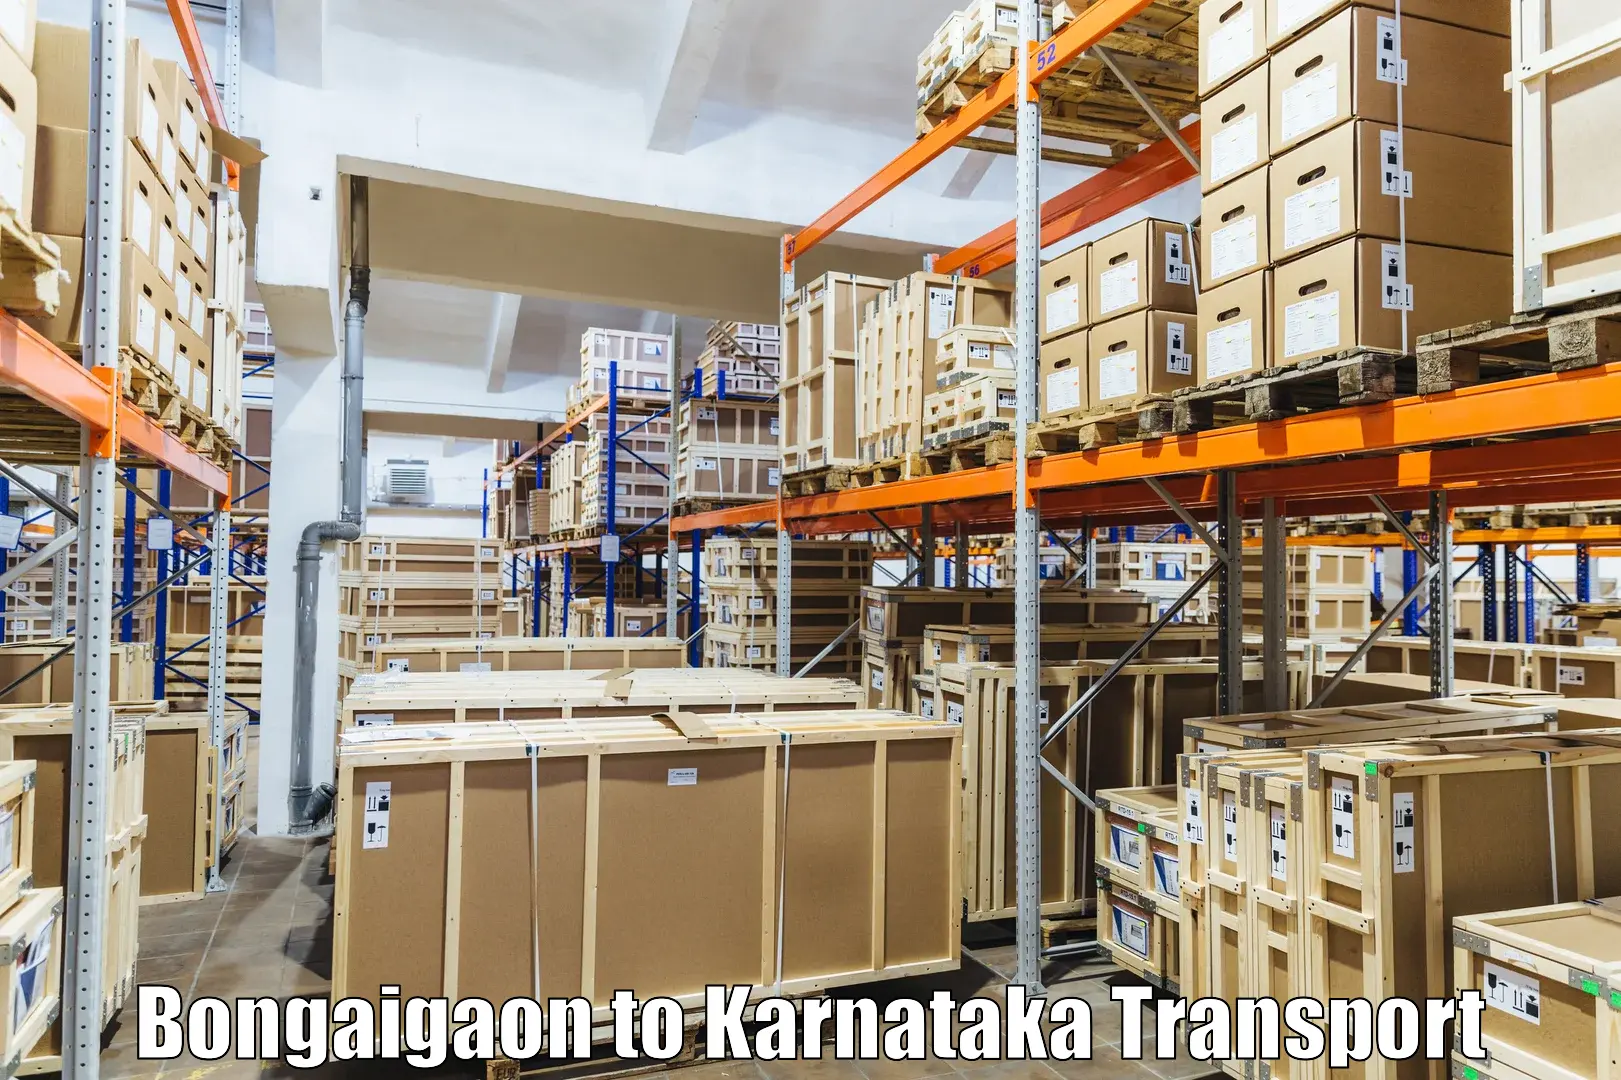 Luggage transport services Bongaigaon to Yellare